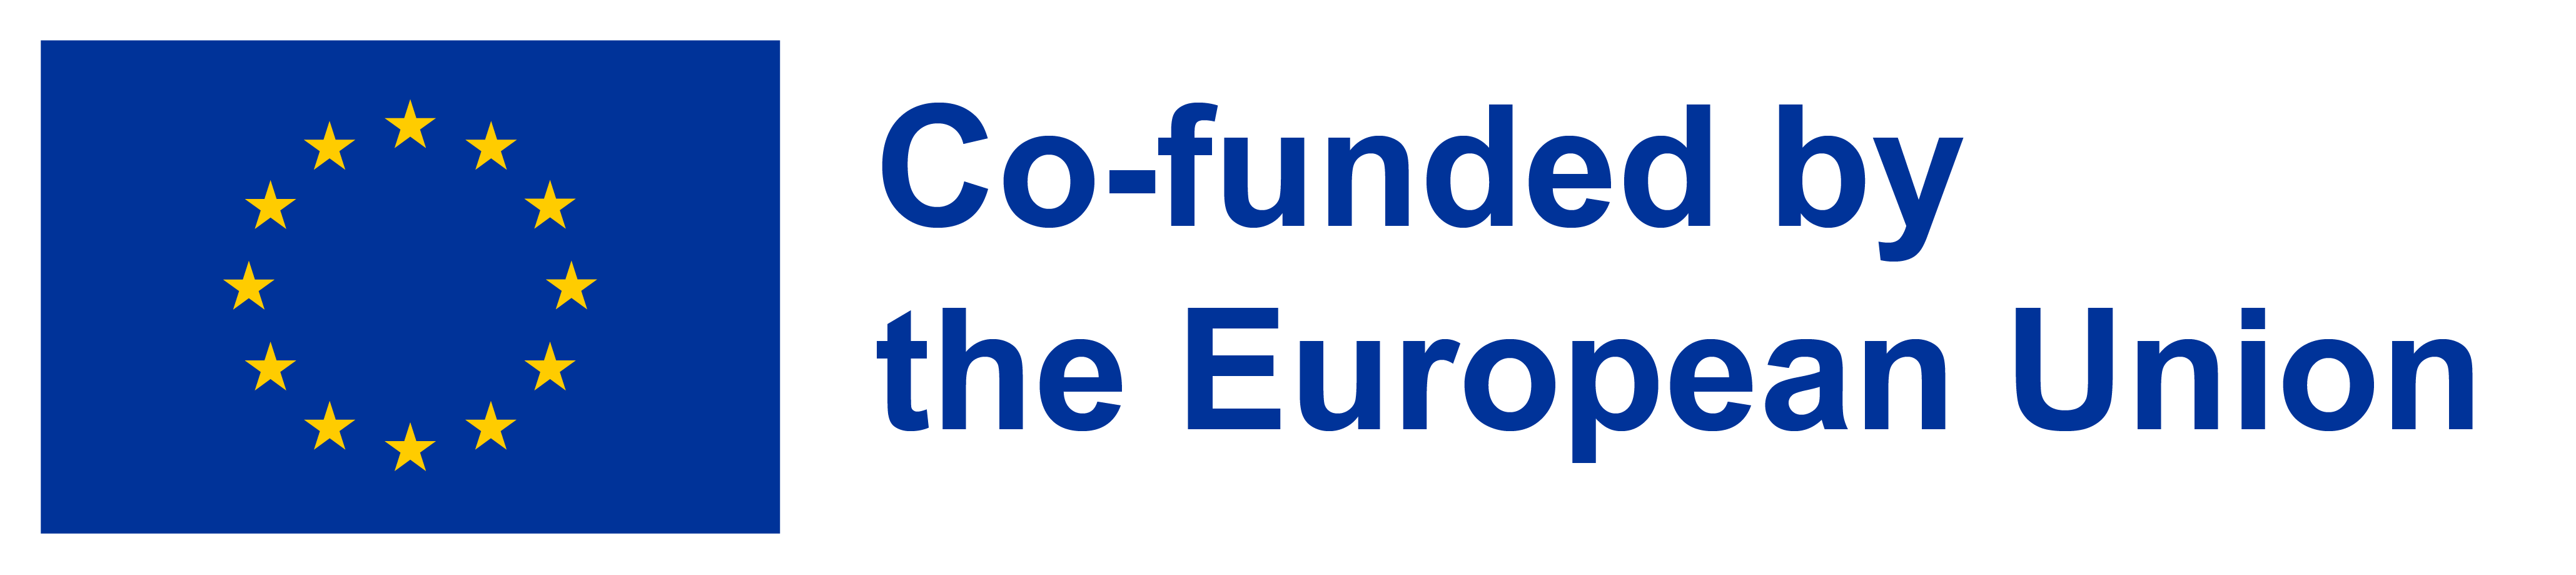 Logo Cofinanciado por la Unión Europea